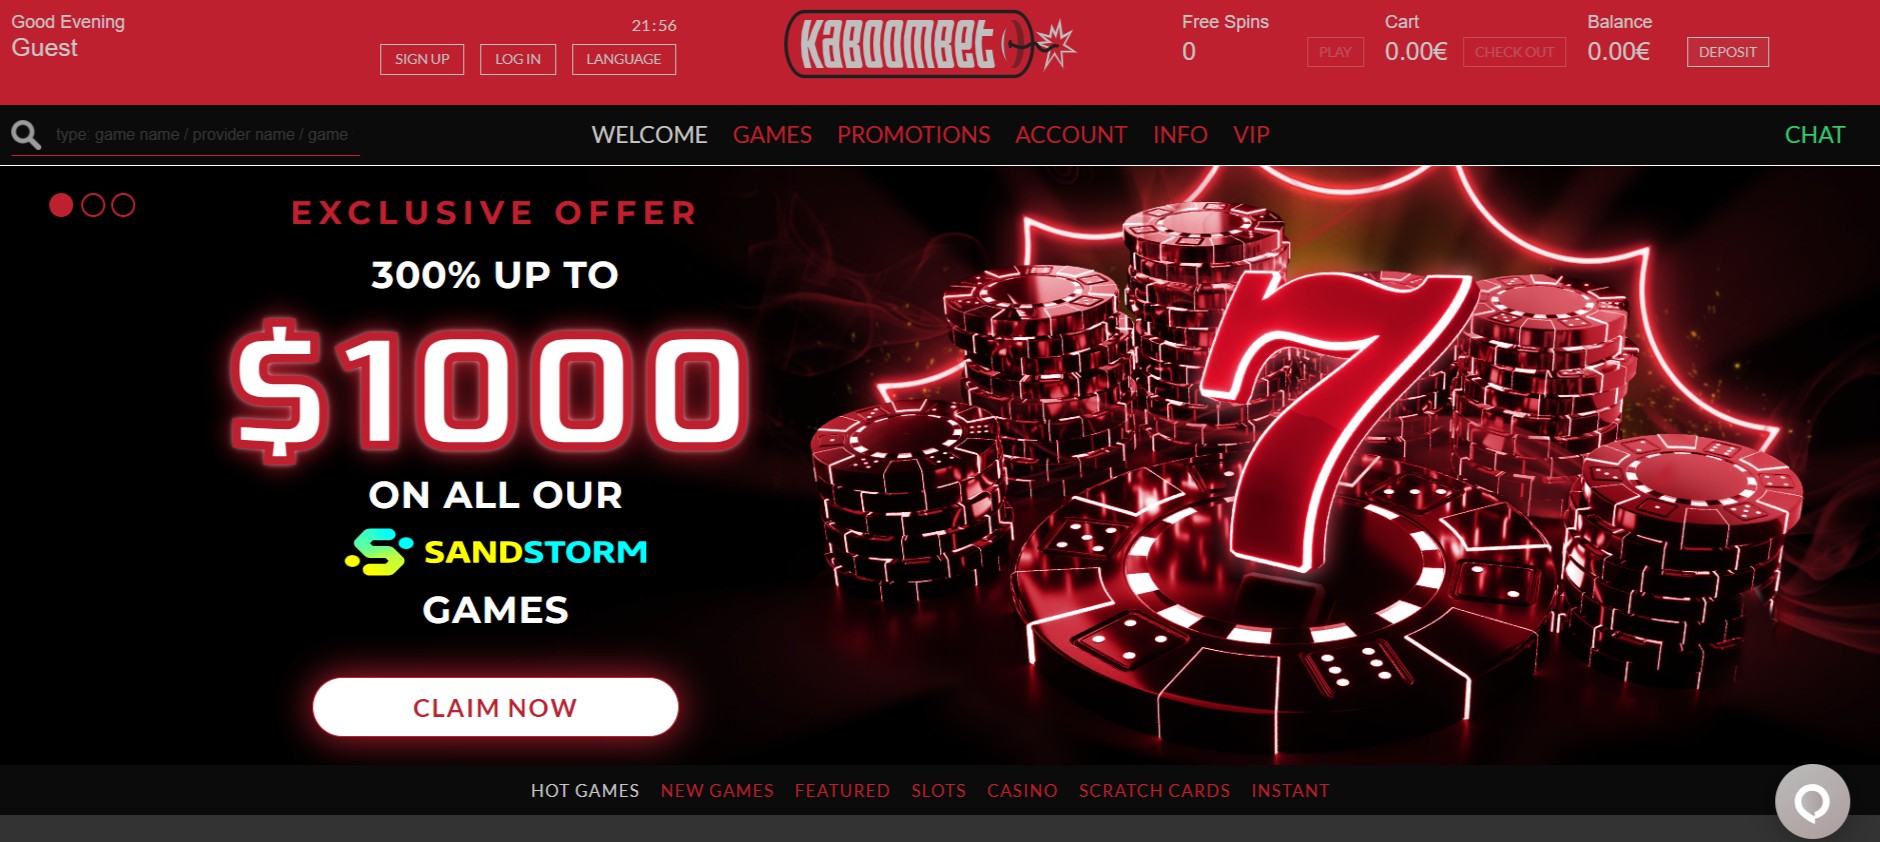 Schermafbeelding van de startpagina van Kaboombet Casino